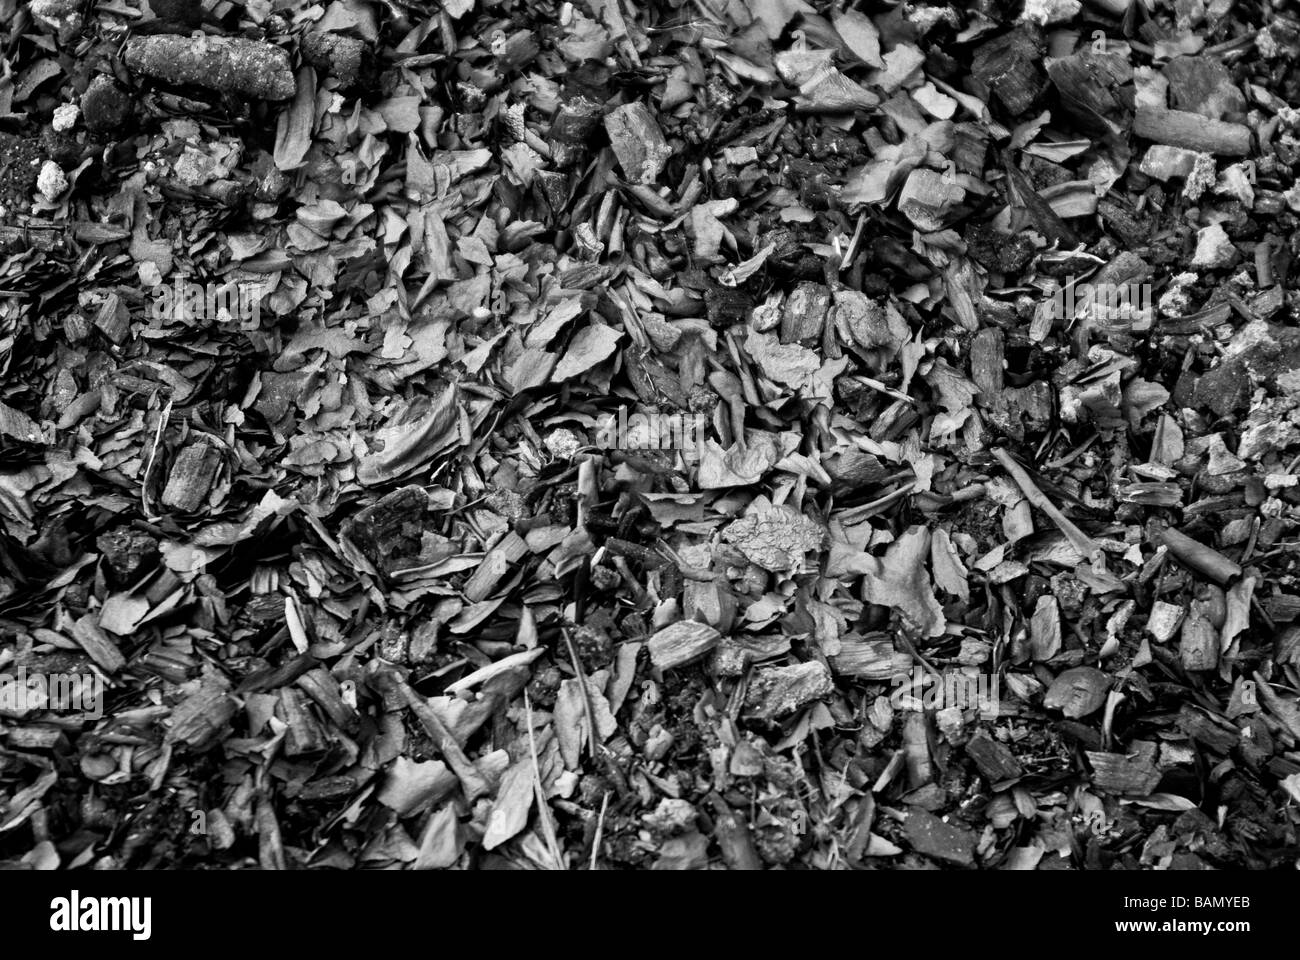 Reste eines Kamins. Verbrannte Kohle, Holz und Asche. Schwarz / weiß Hintergrund. Stockfoto